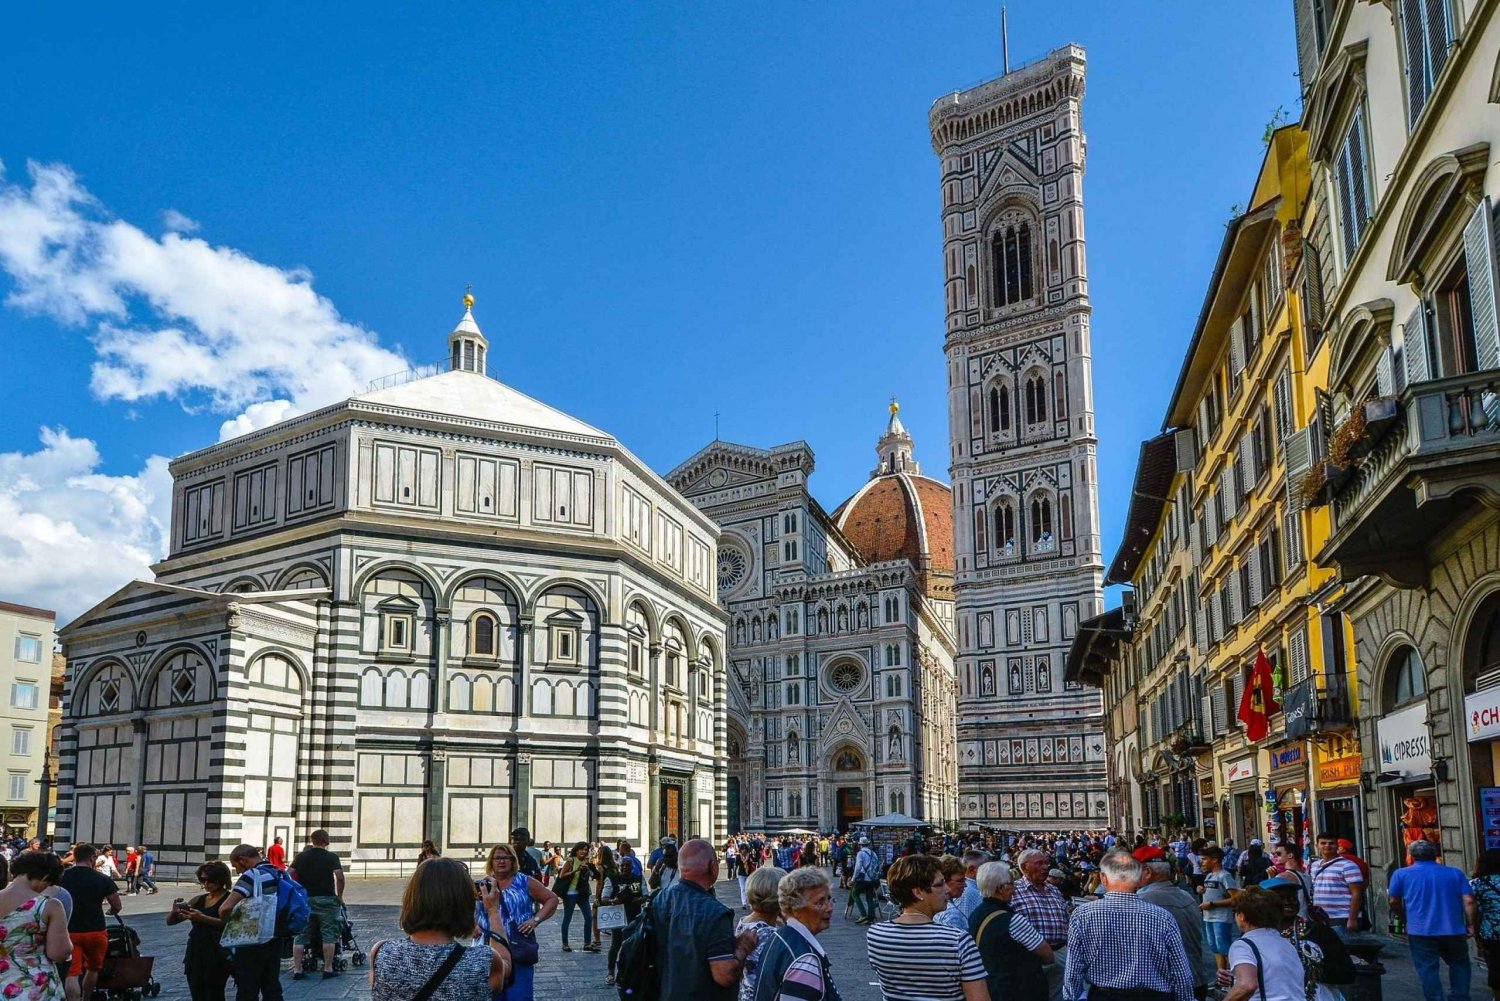 Florencja: Duomo i kopuła Brunelleschiego - mała wycieczka grupowa